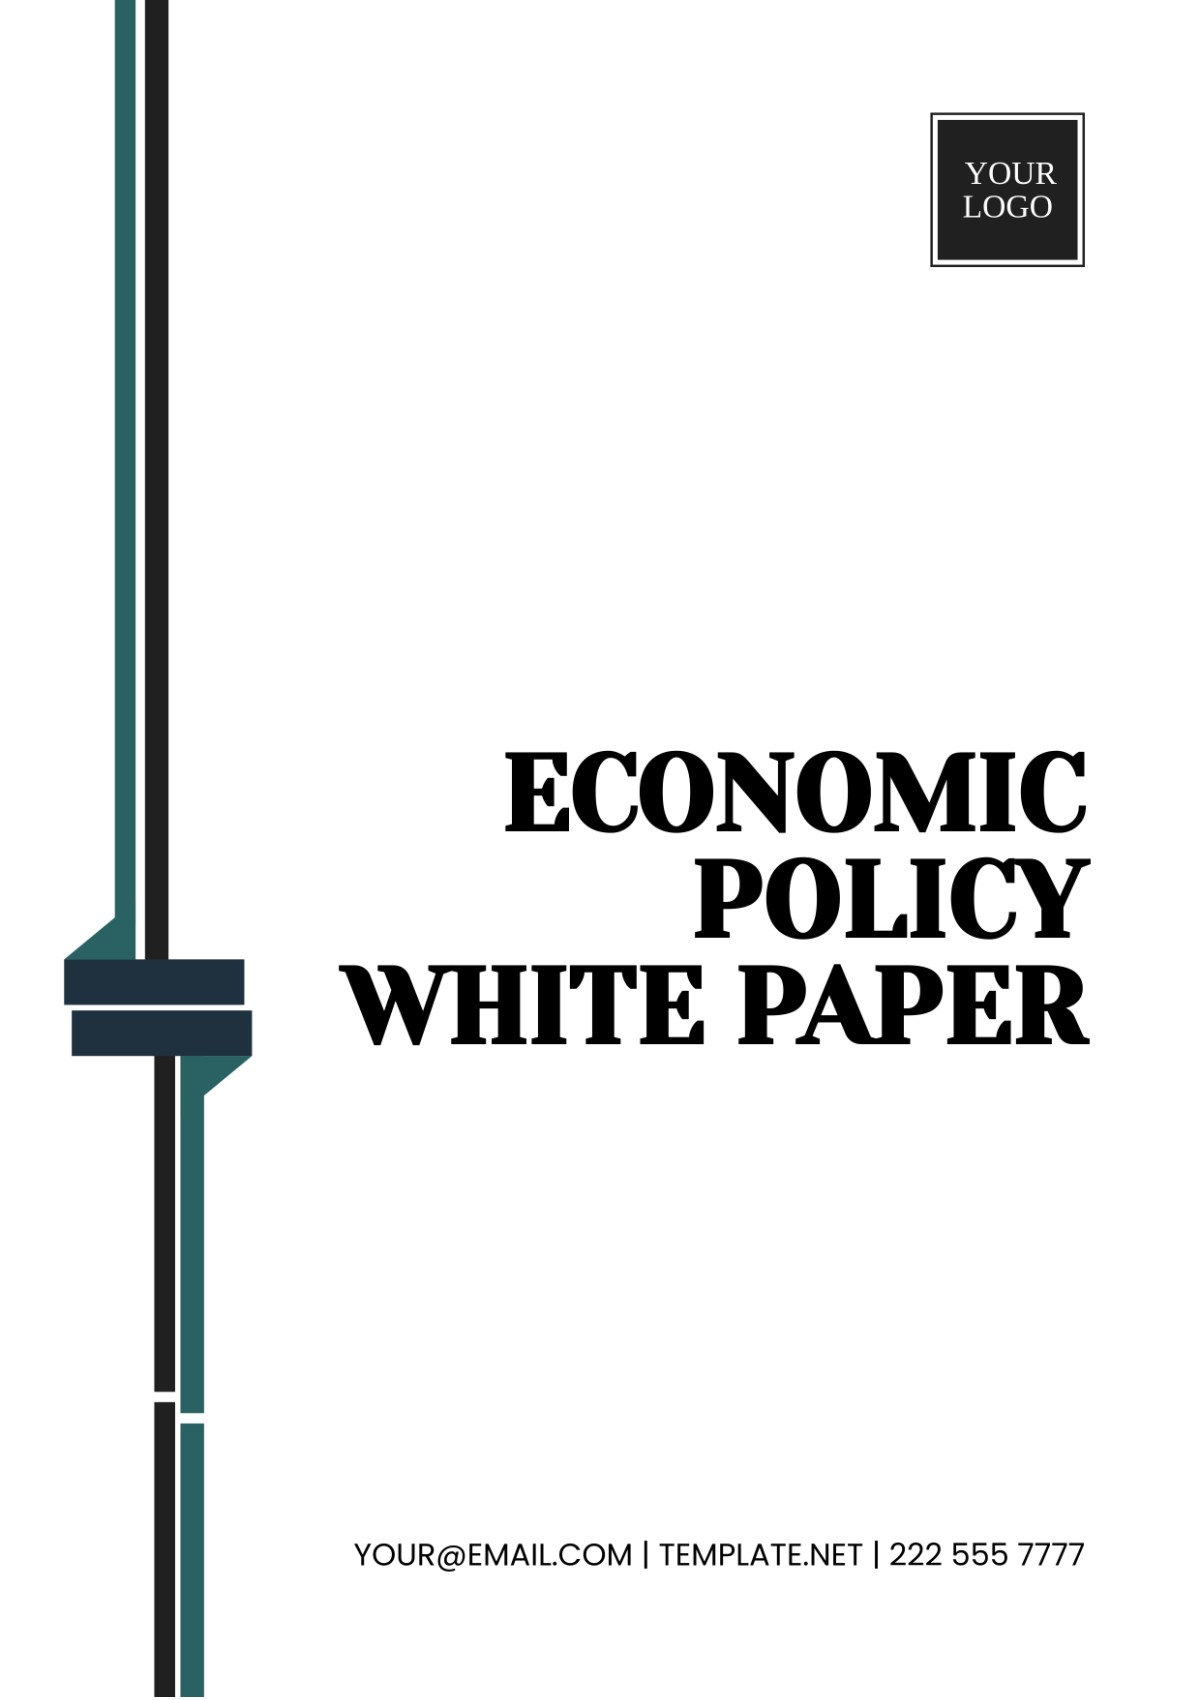 Economic Policy White Paper Template